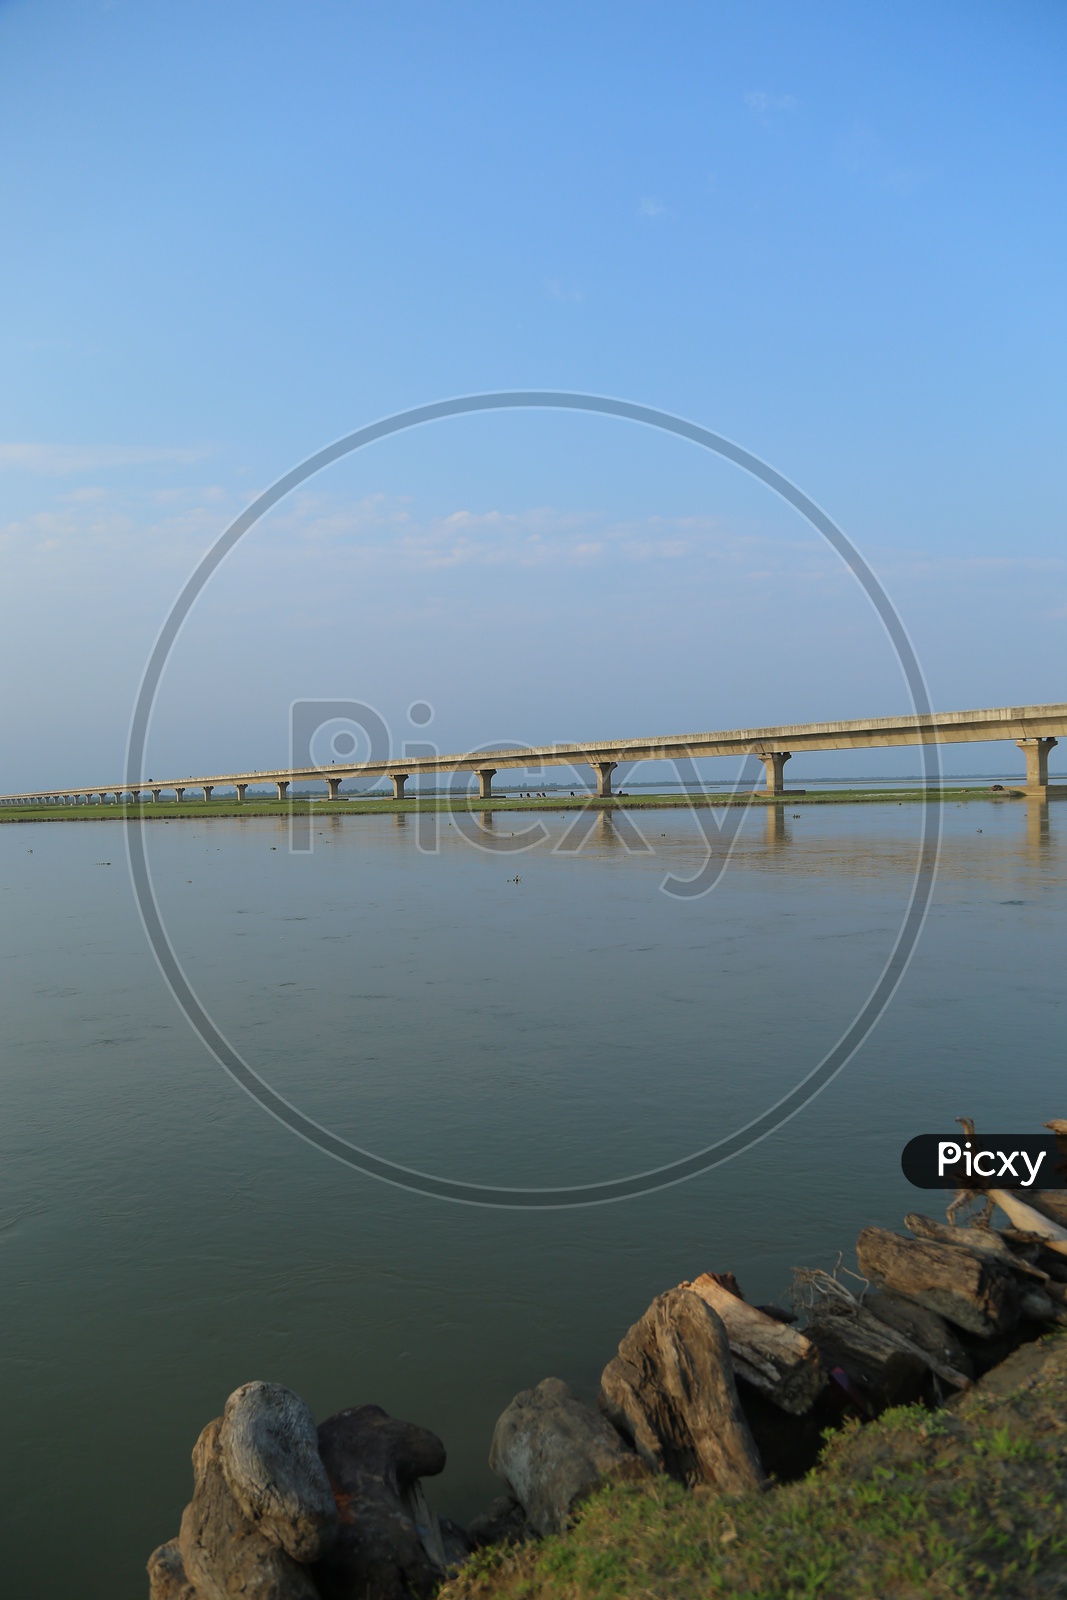 Dhola sadiya bridge in Assam.